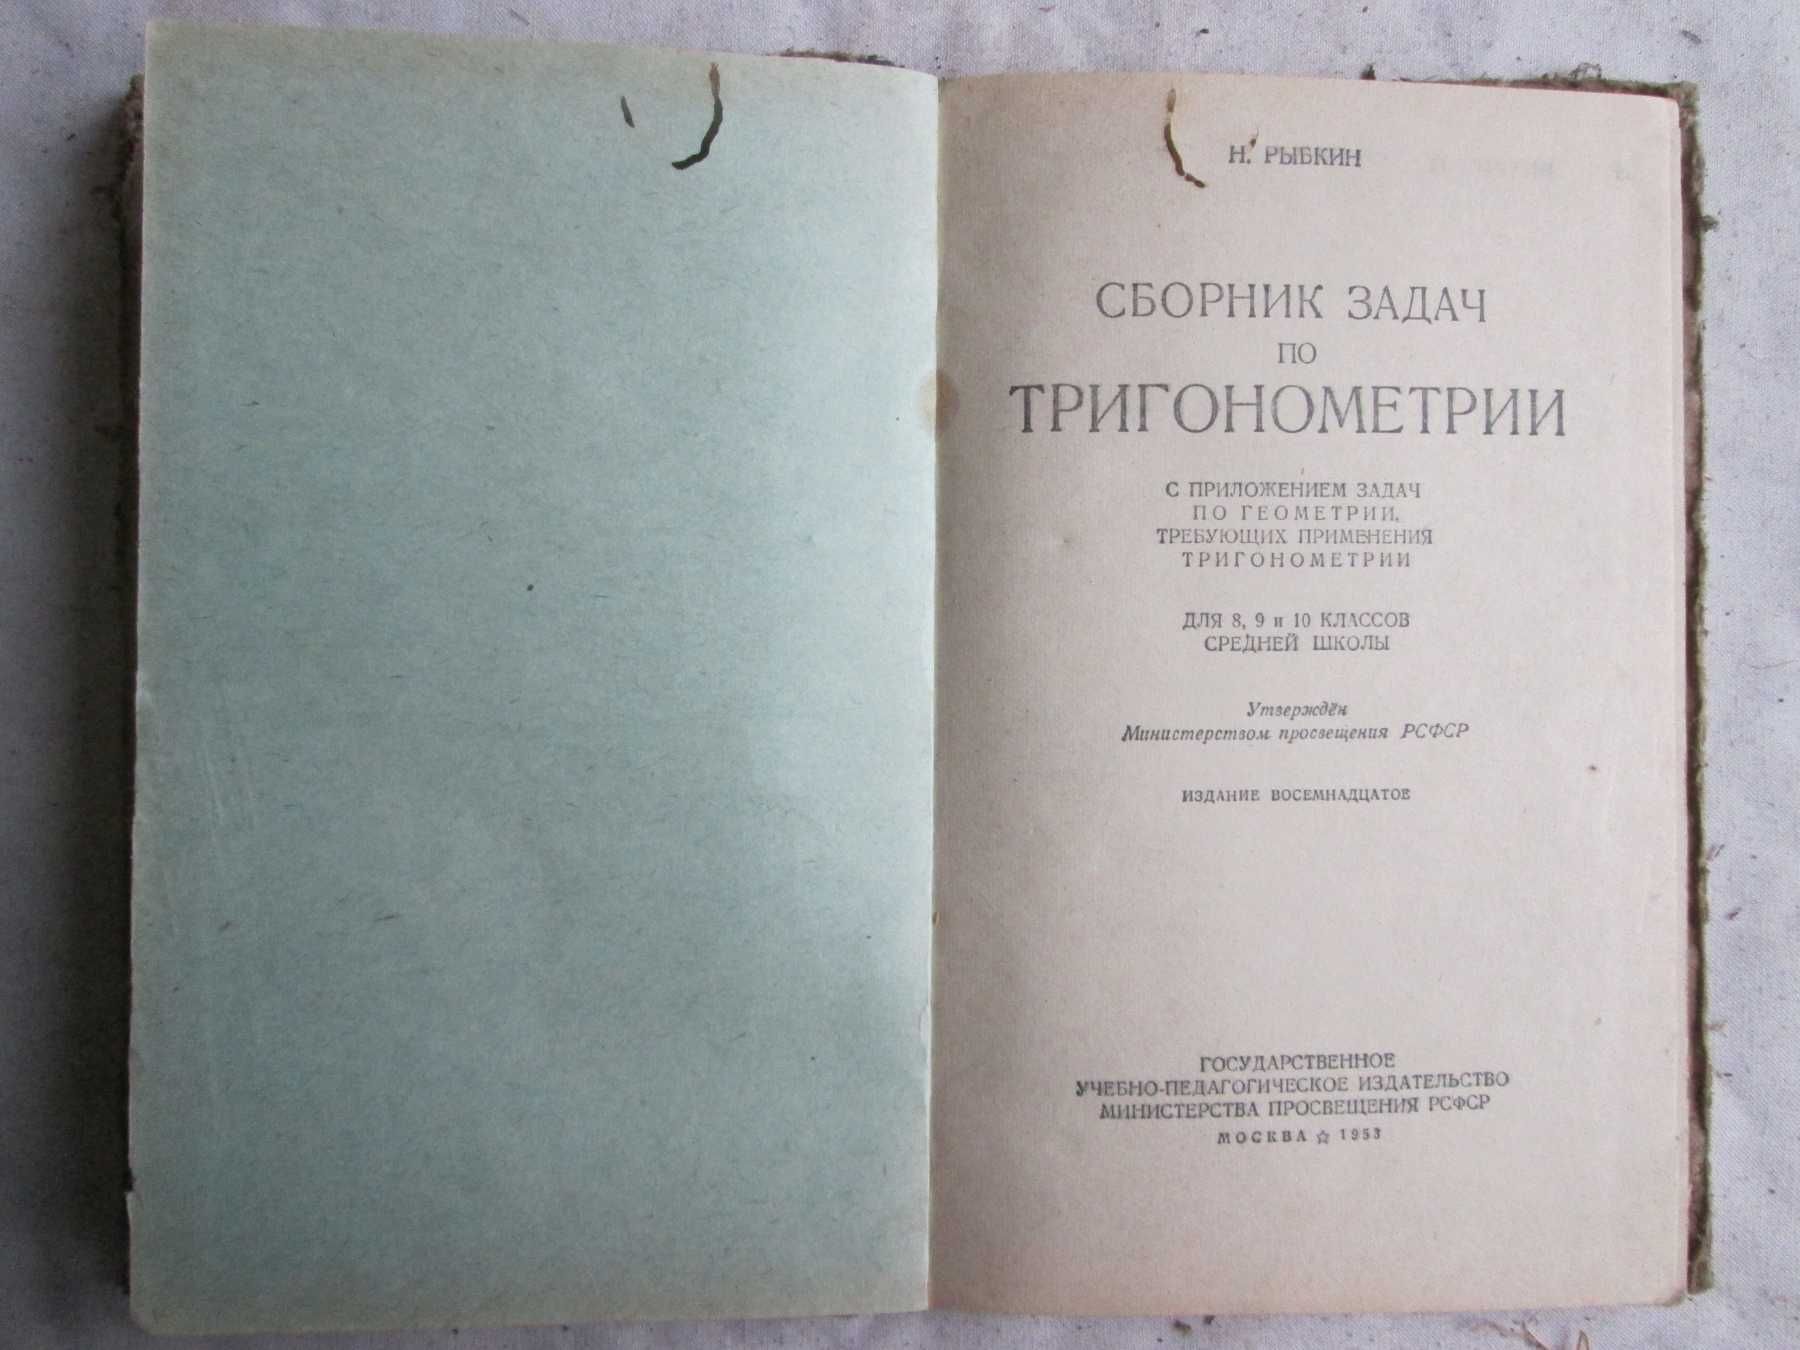 Сборник задач по тригонометрии для 8, 9, 10 кл. 1953 г